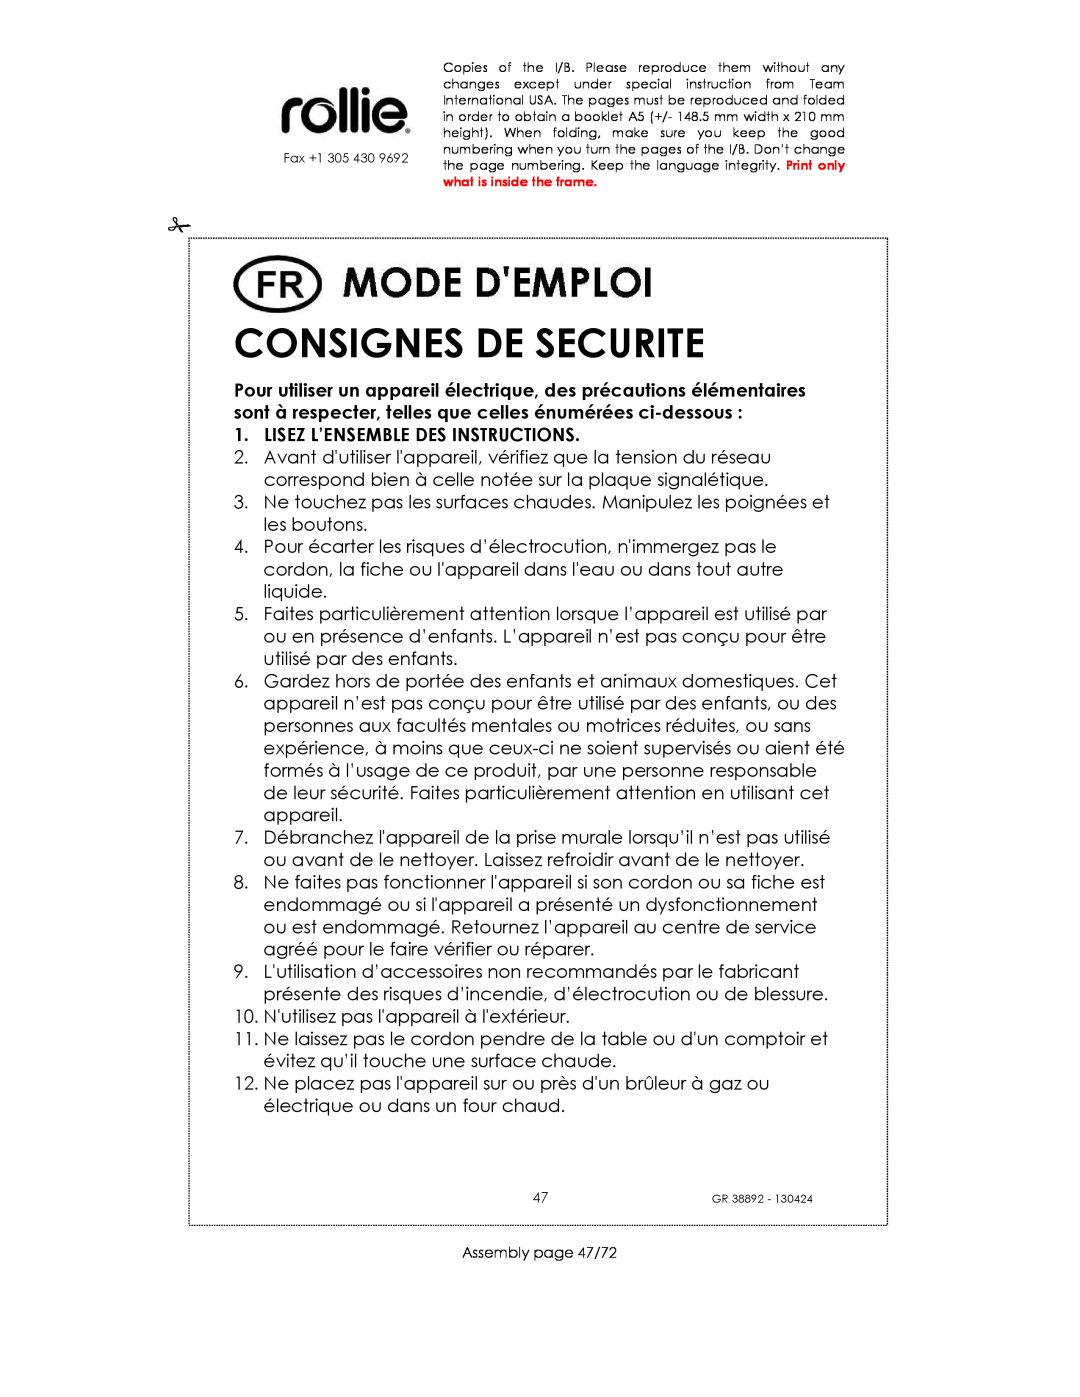 Kalorik GR38892 manual Consignes De Securite, Lisez L’Ensemble Des Instructions 